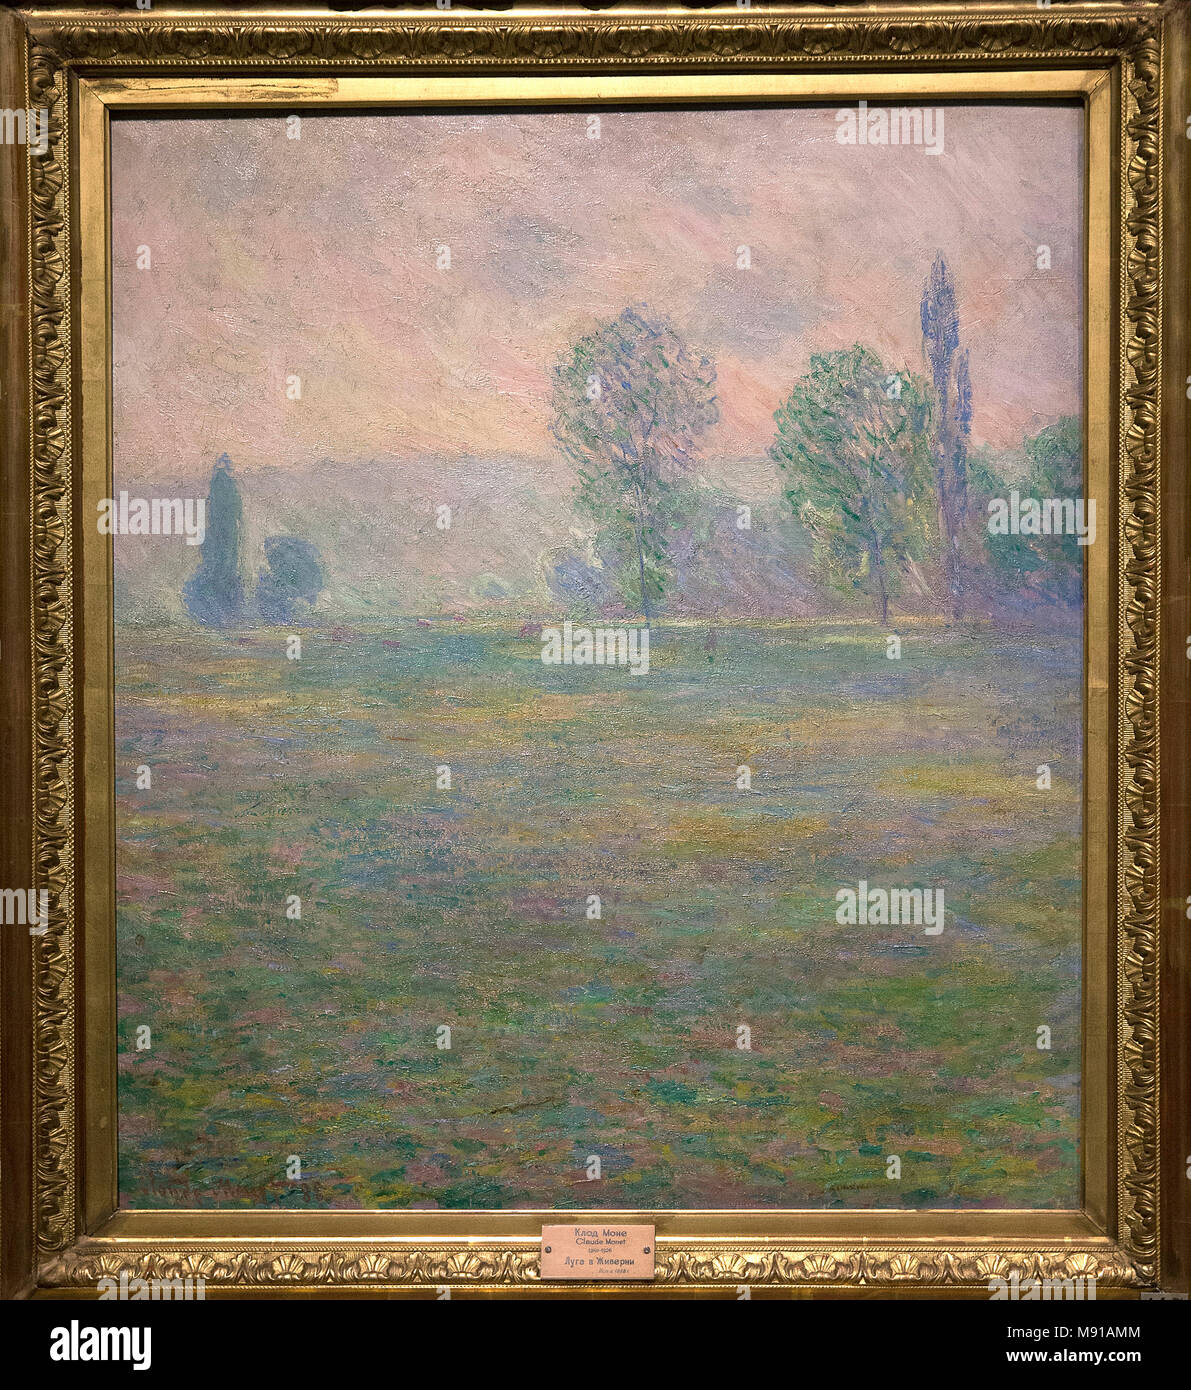 Claude Monet, Wiesen in Giverny, 1888, Öl auf Leinwand. Shchukin Sammlung, Museum Ermitage, St. Petersburg. Erschossen, während in Paris ausgestellt. Stockfoto